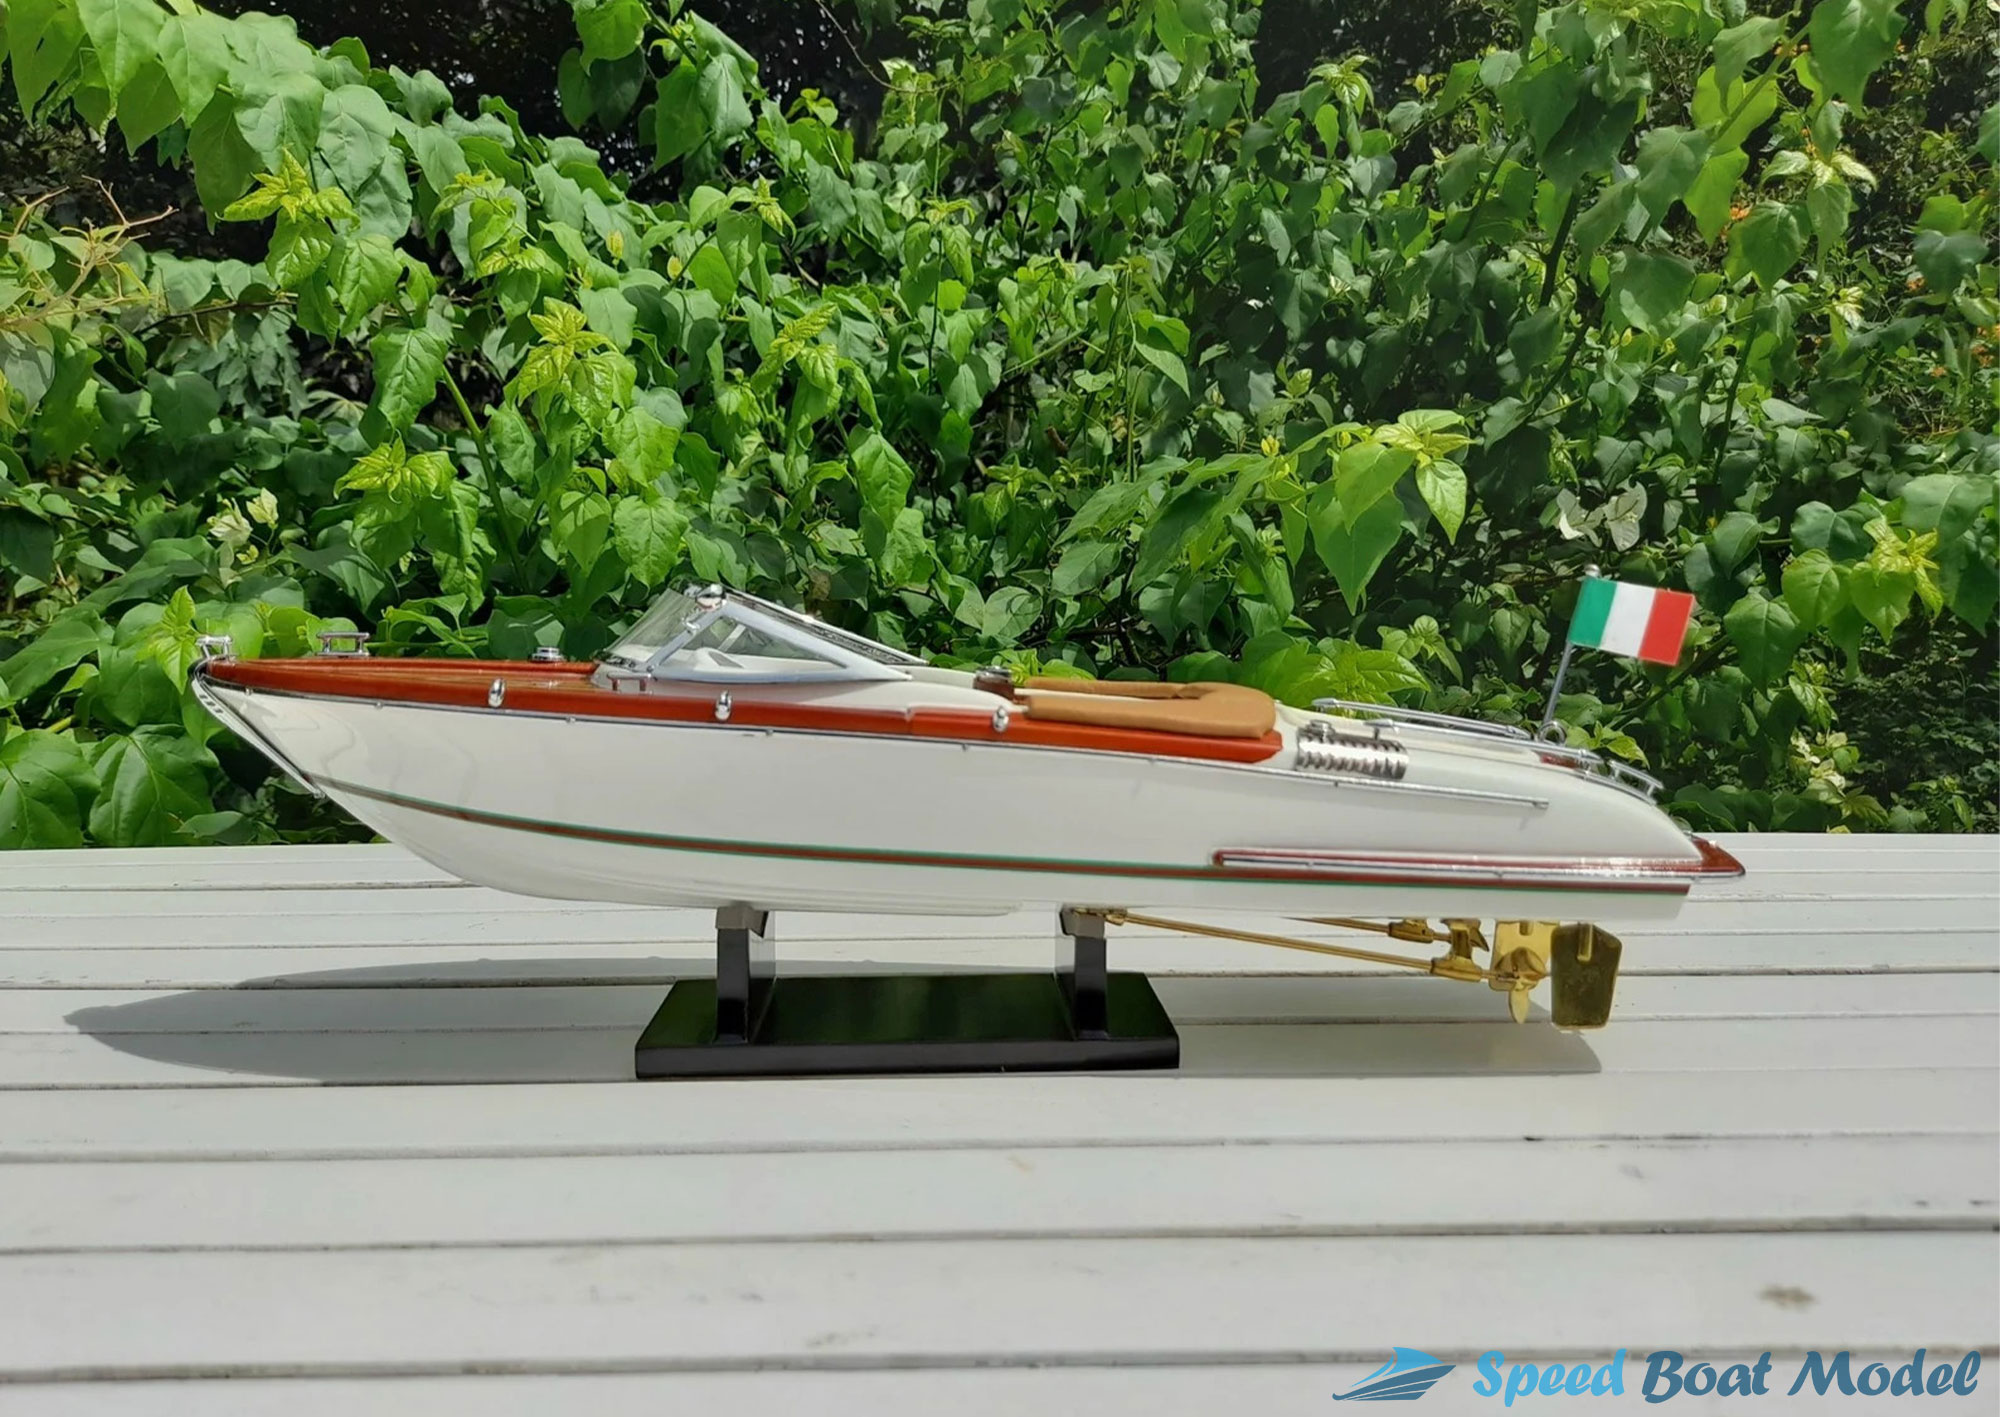 White Riva Aquariva Gucci Boat Model 16.5"